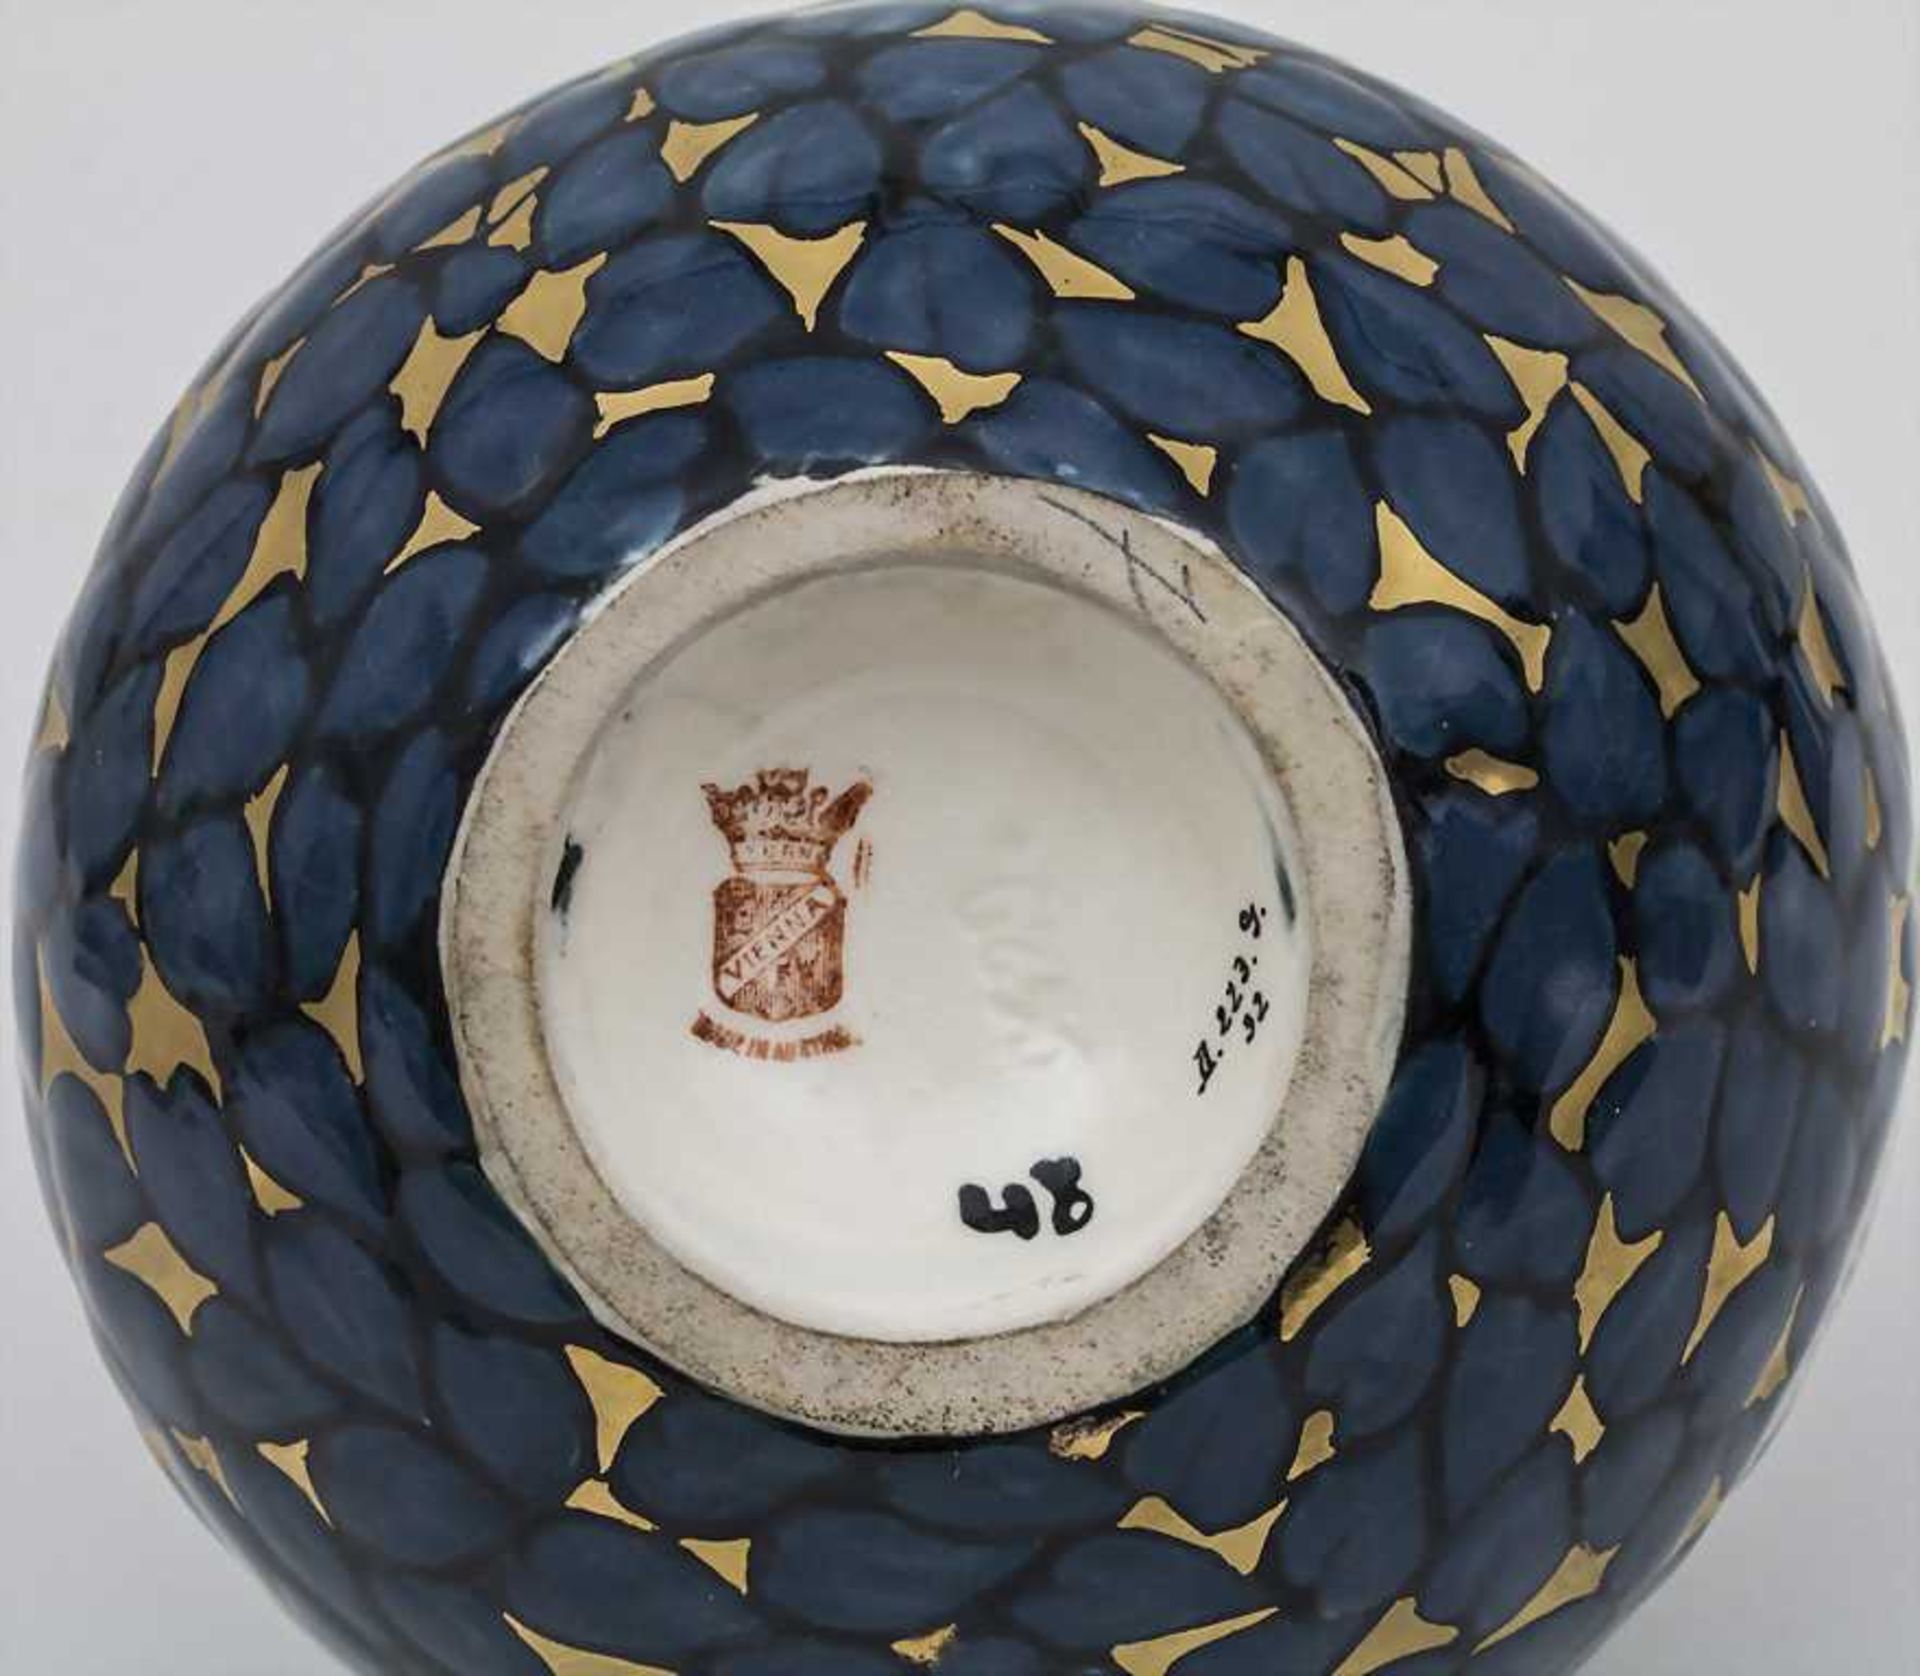 Jugendstil Vase / Art Nouveau Vase, Ernst Wahliss, Turn-Teplitz, ca. 1910 Material: Keramik, - Image 2 of 2